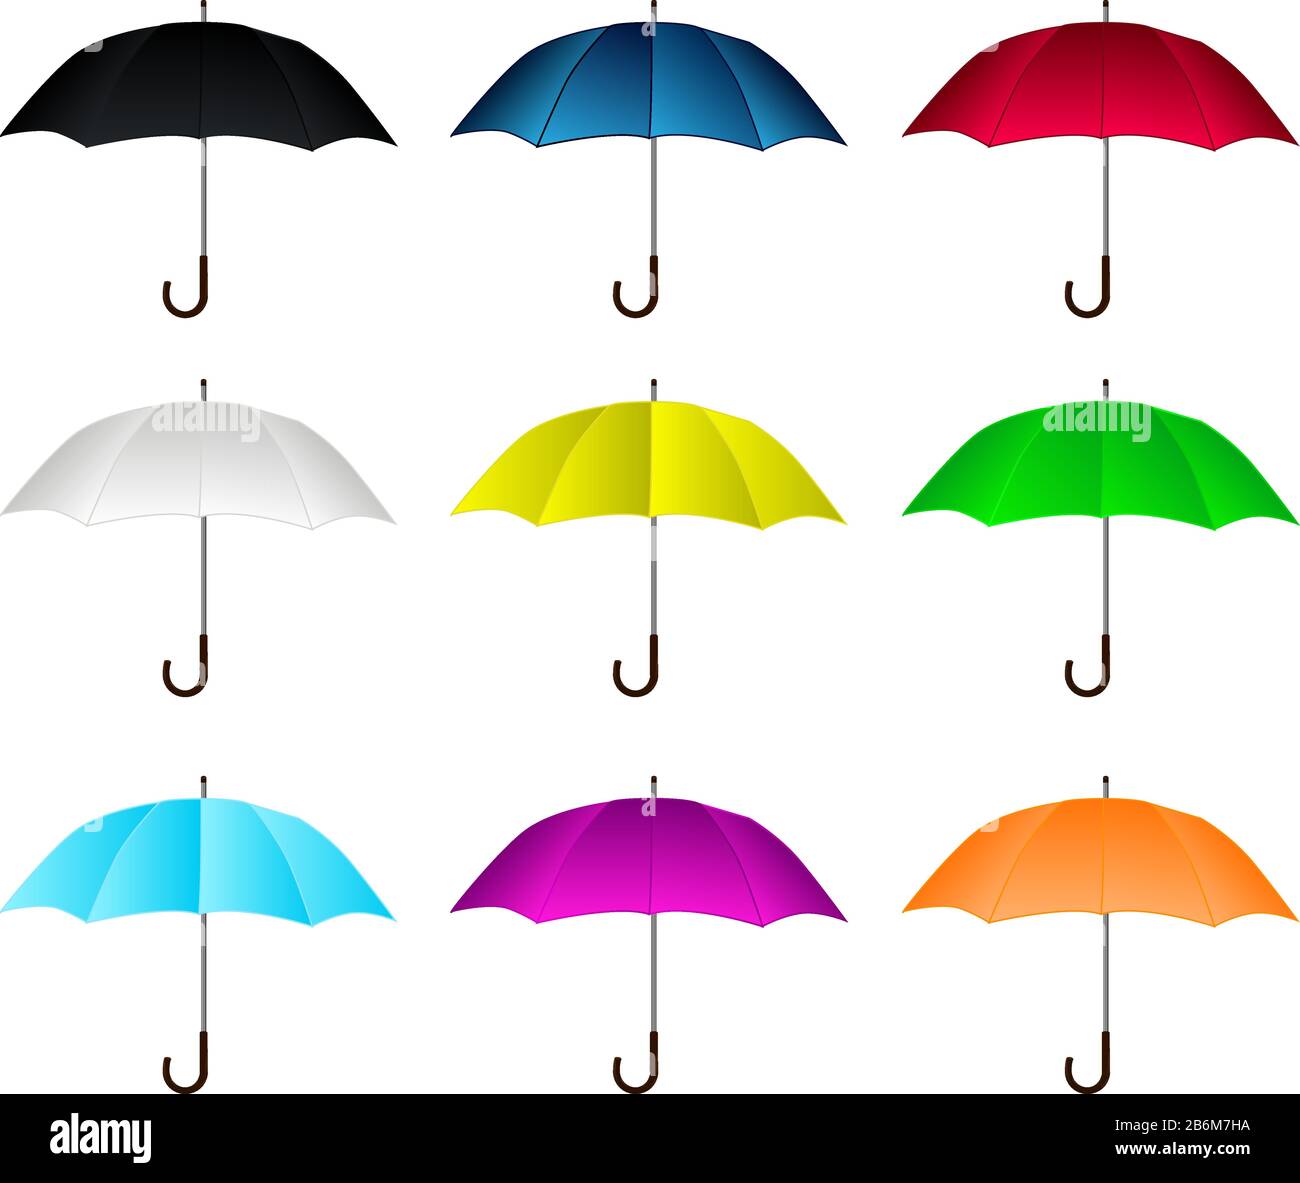 Umbrella set Stock Vector